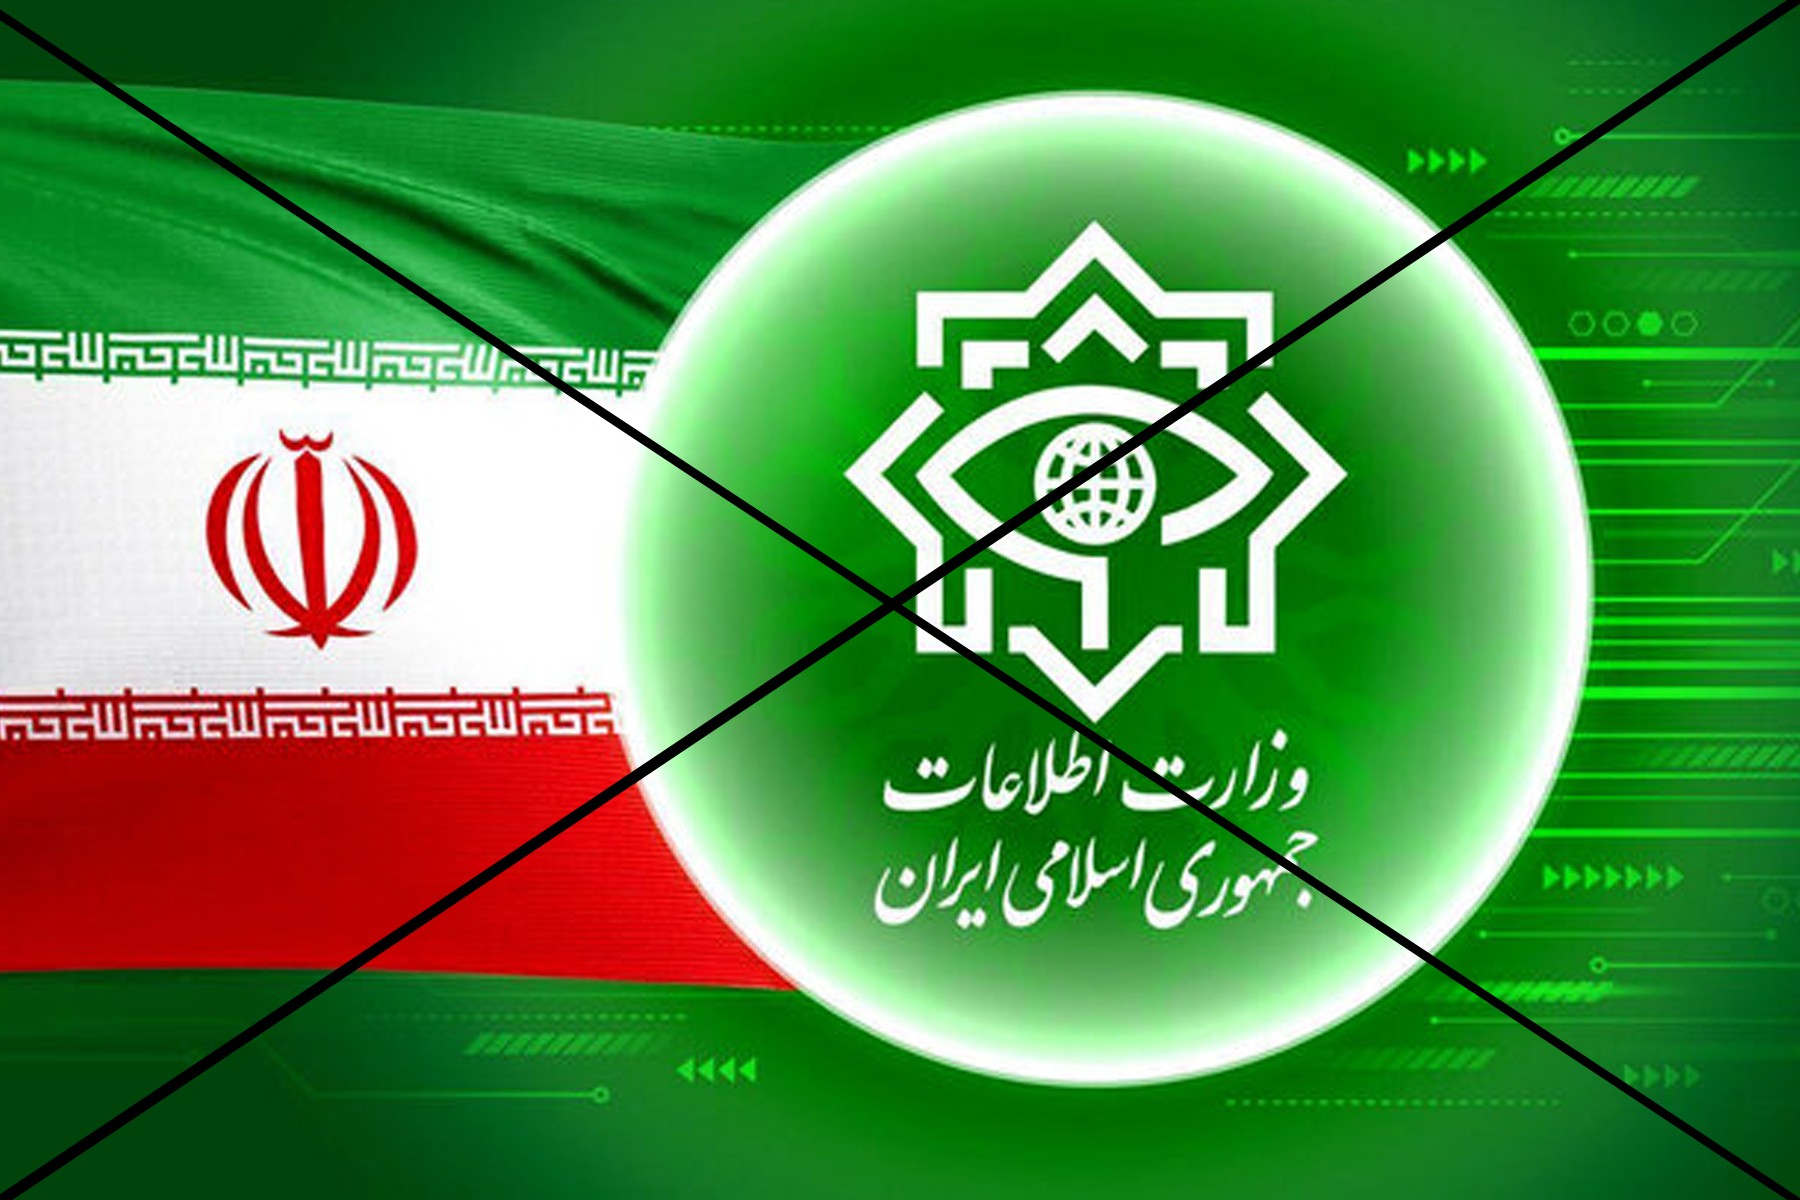 وزارت اطلاعات جمهوری اسلامی گفت ۳۰ طرح بمب گذاری در تهران را خنثی کرده و ملت ایران گفتند خودتی!